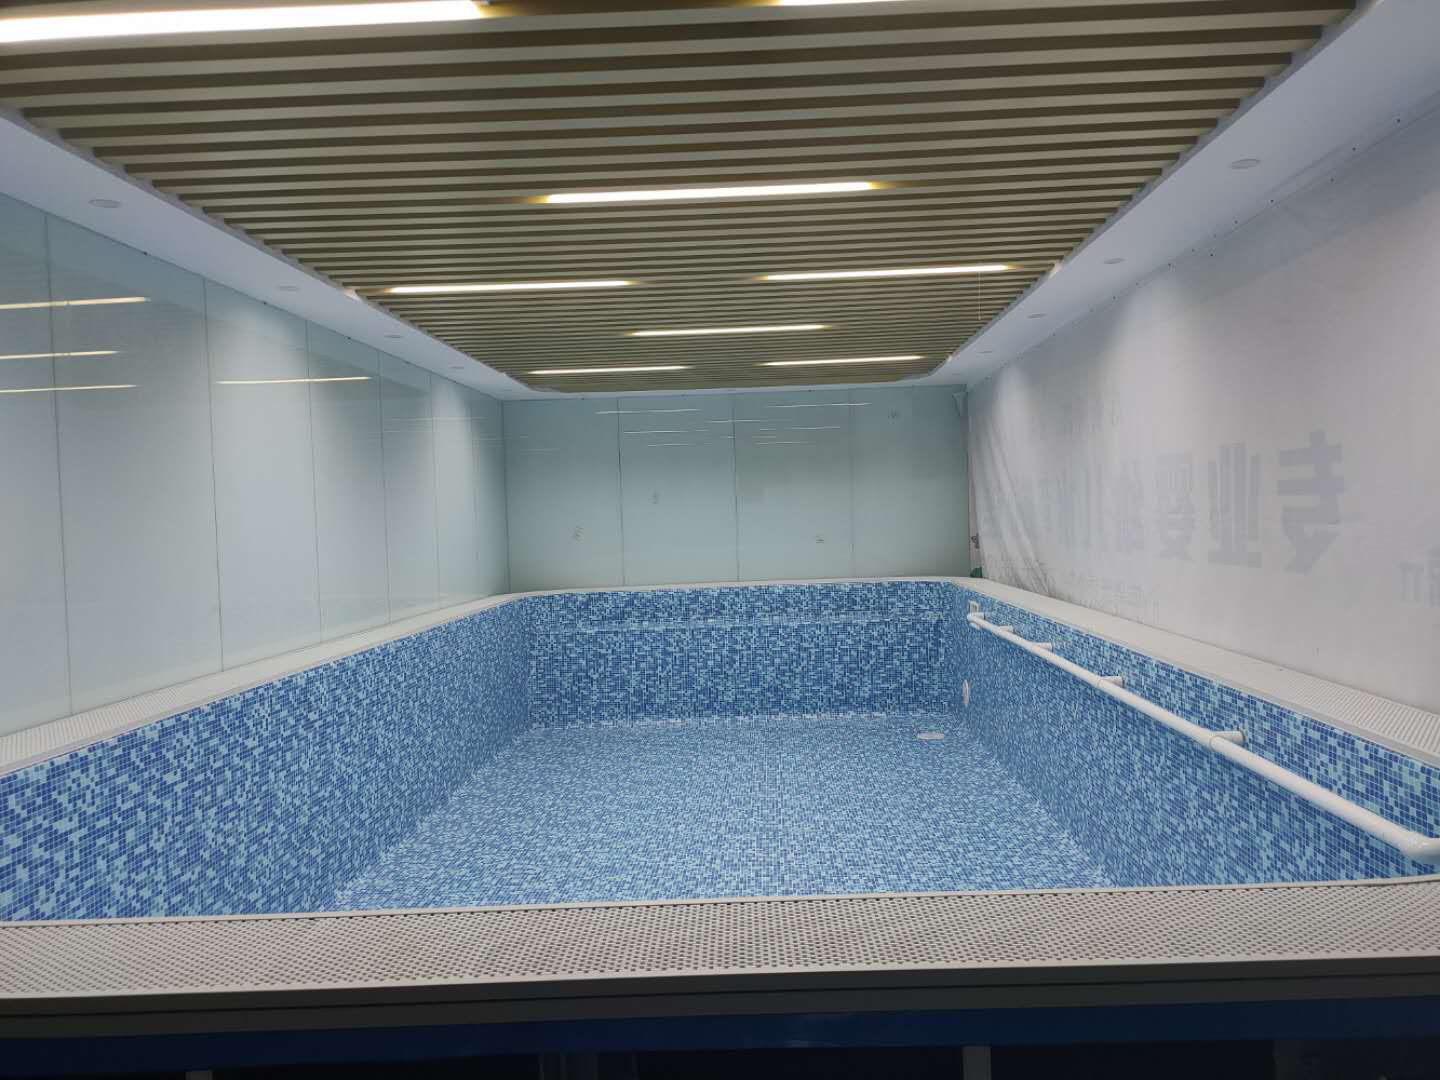 上海水育早教鋼結構游泳池項目8米×4米